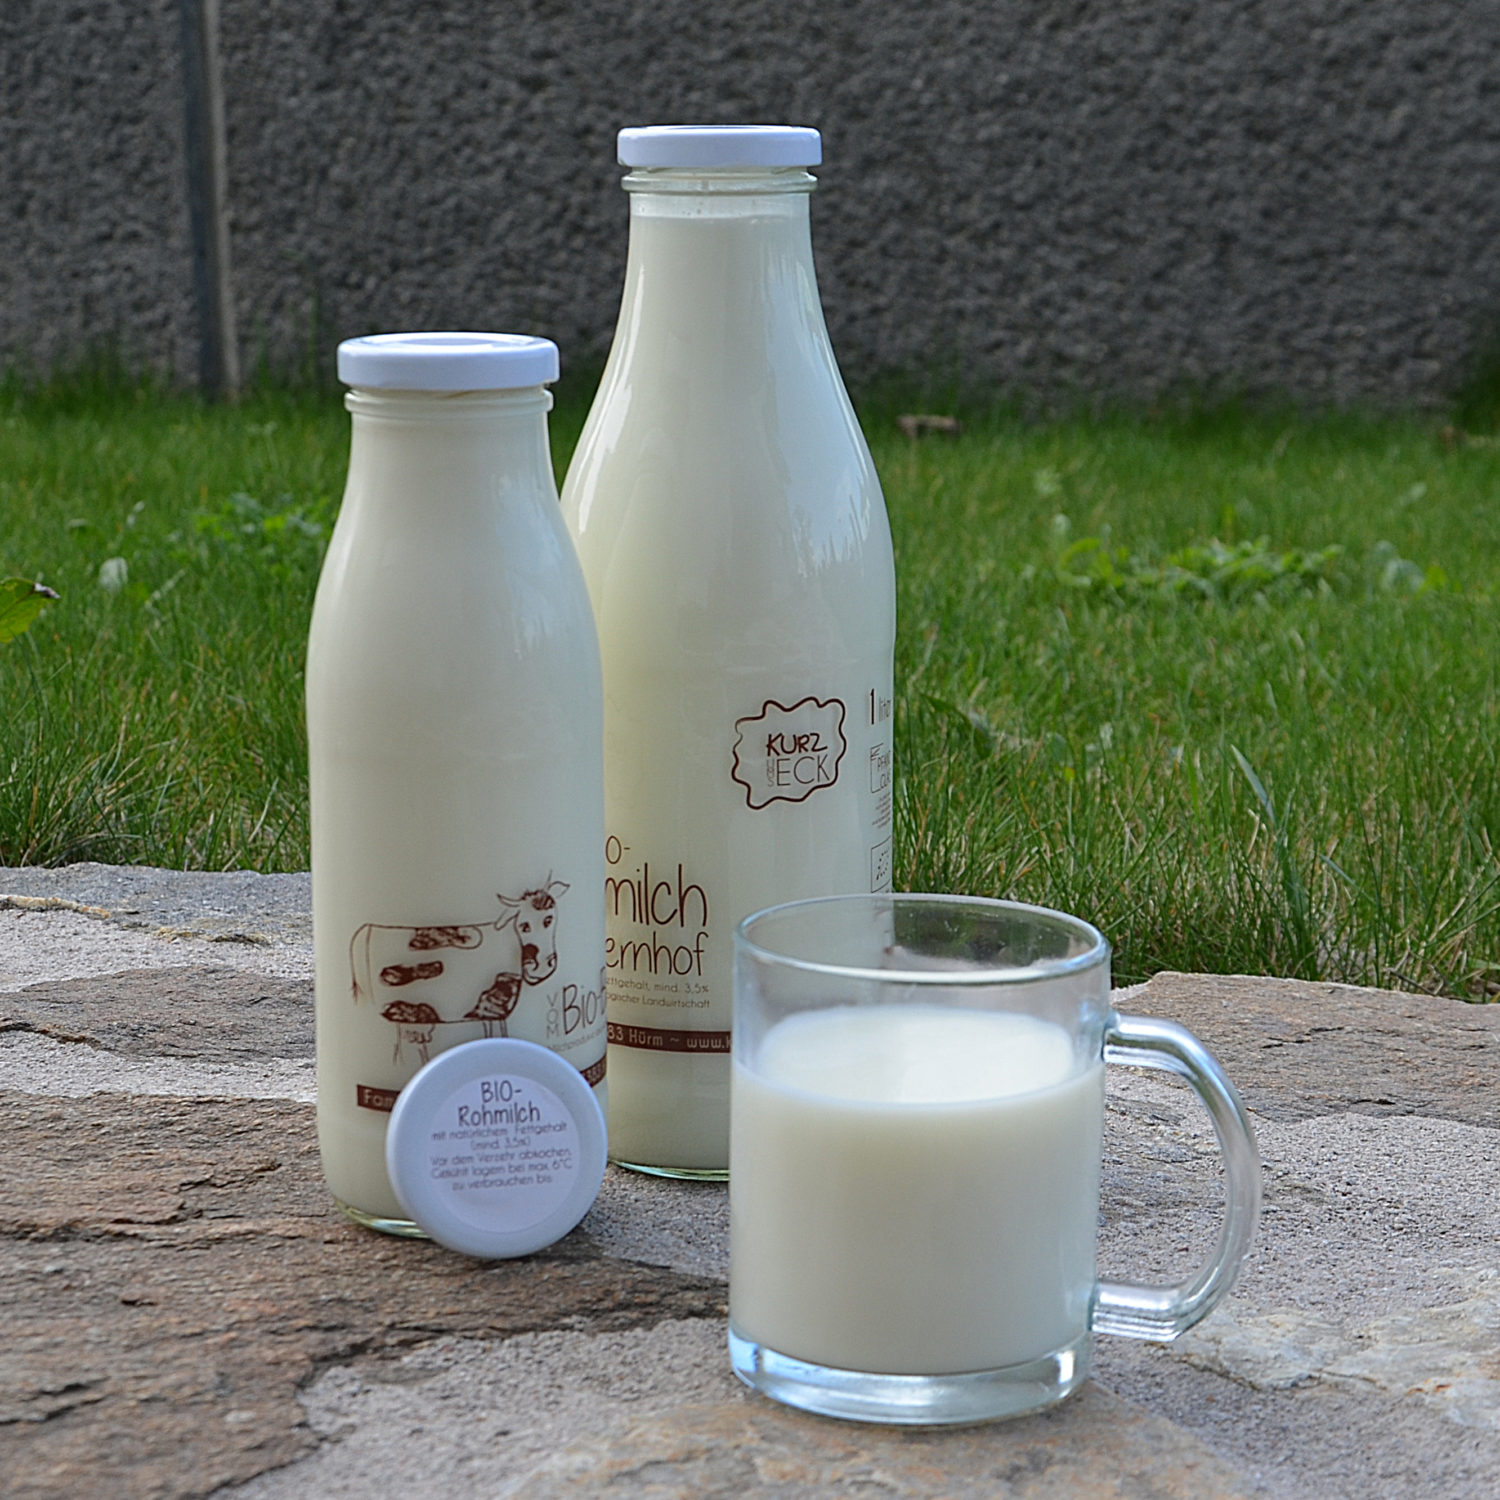 Milch kalbfreundlich Rohmilch – SpeiseLokal!